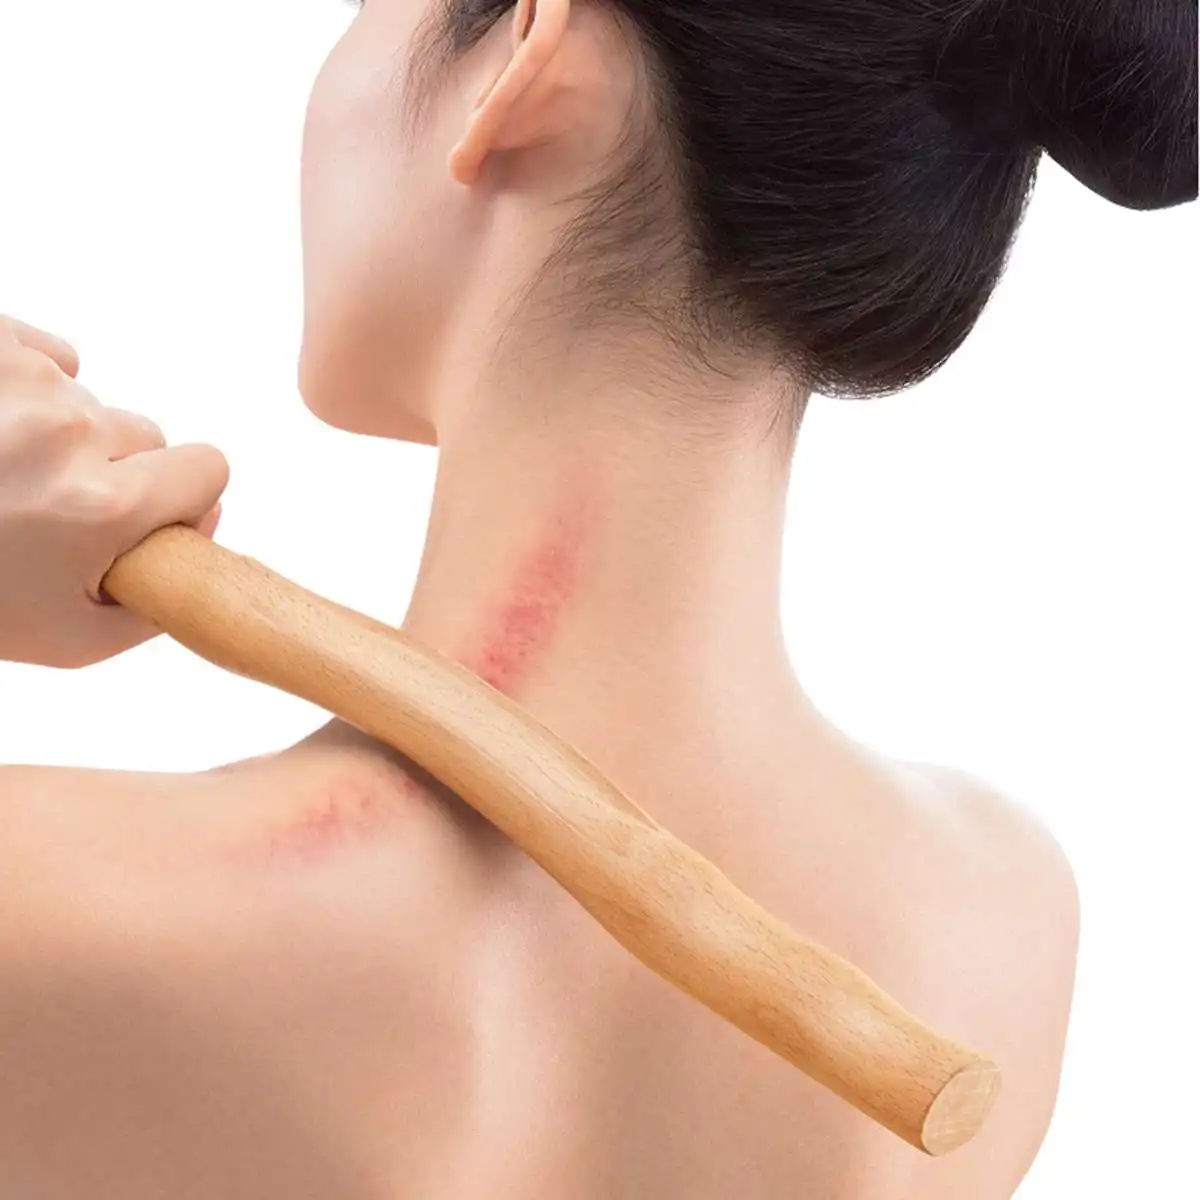 Guasha Stick натуральный скребок для дерева китайский Gua Sha инструменты для рук шеи спины тела Иглоукалывание давление терапия Массаж Уход за телом